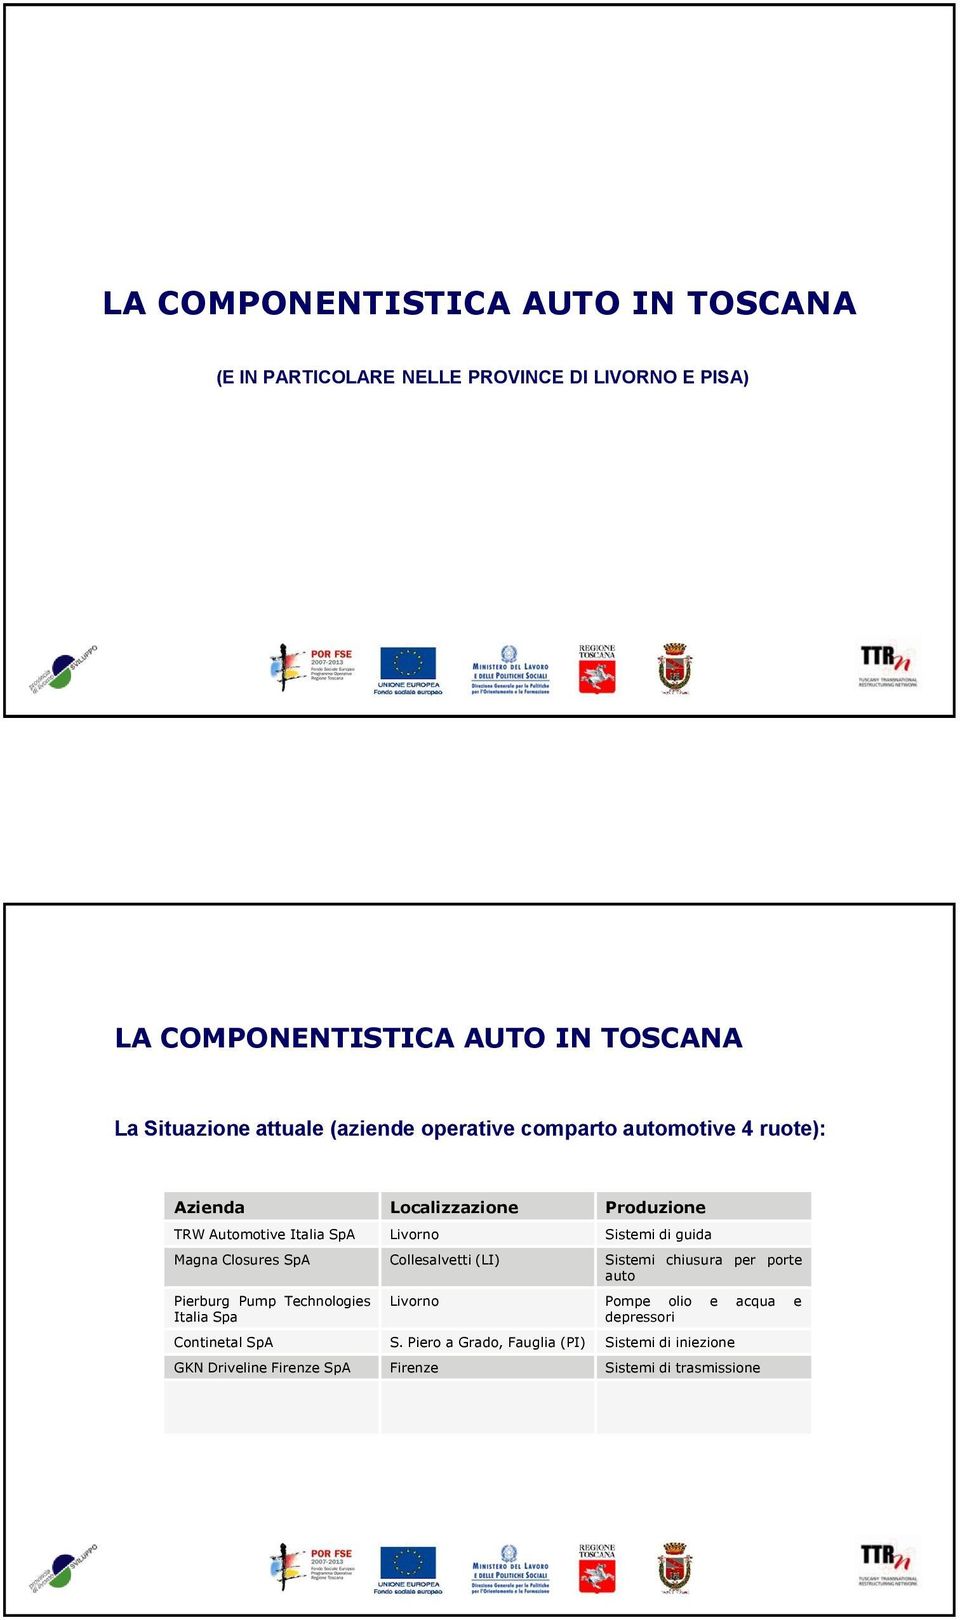 guida Magna Closures SpA Collesalvetti (LI) Sistemi chiusura per porte auto Pierburg Pump Technologies Italia Spa Livorno Pompe olio e